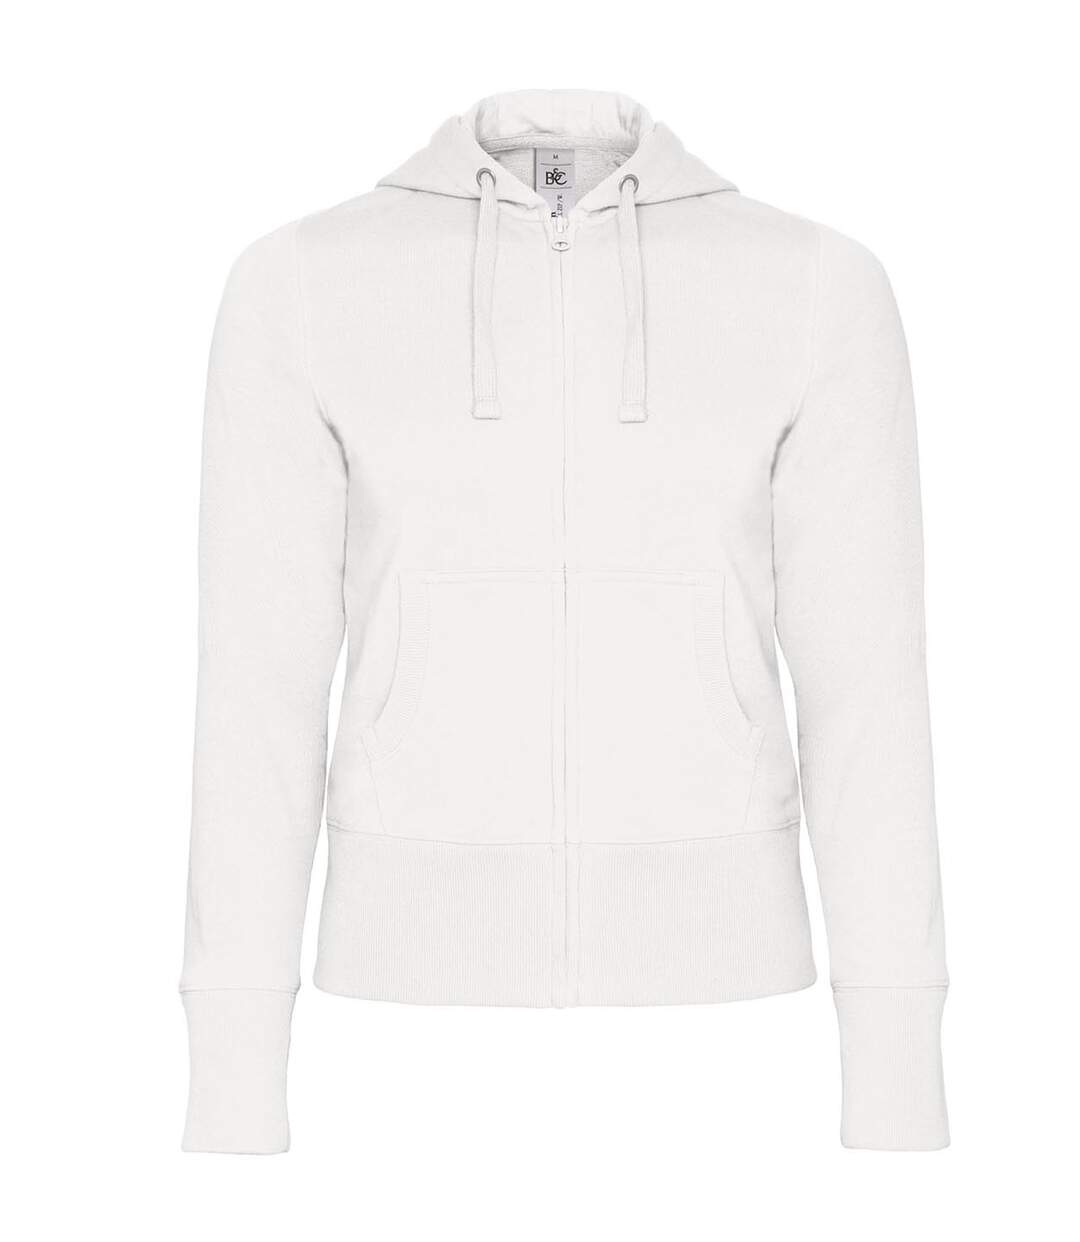 B&C Womens/Ladies Full Zip Hooded Sweatshirt/Hoodie (White)